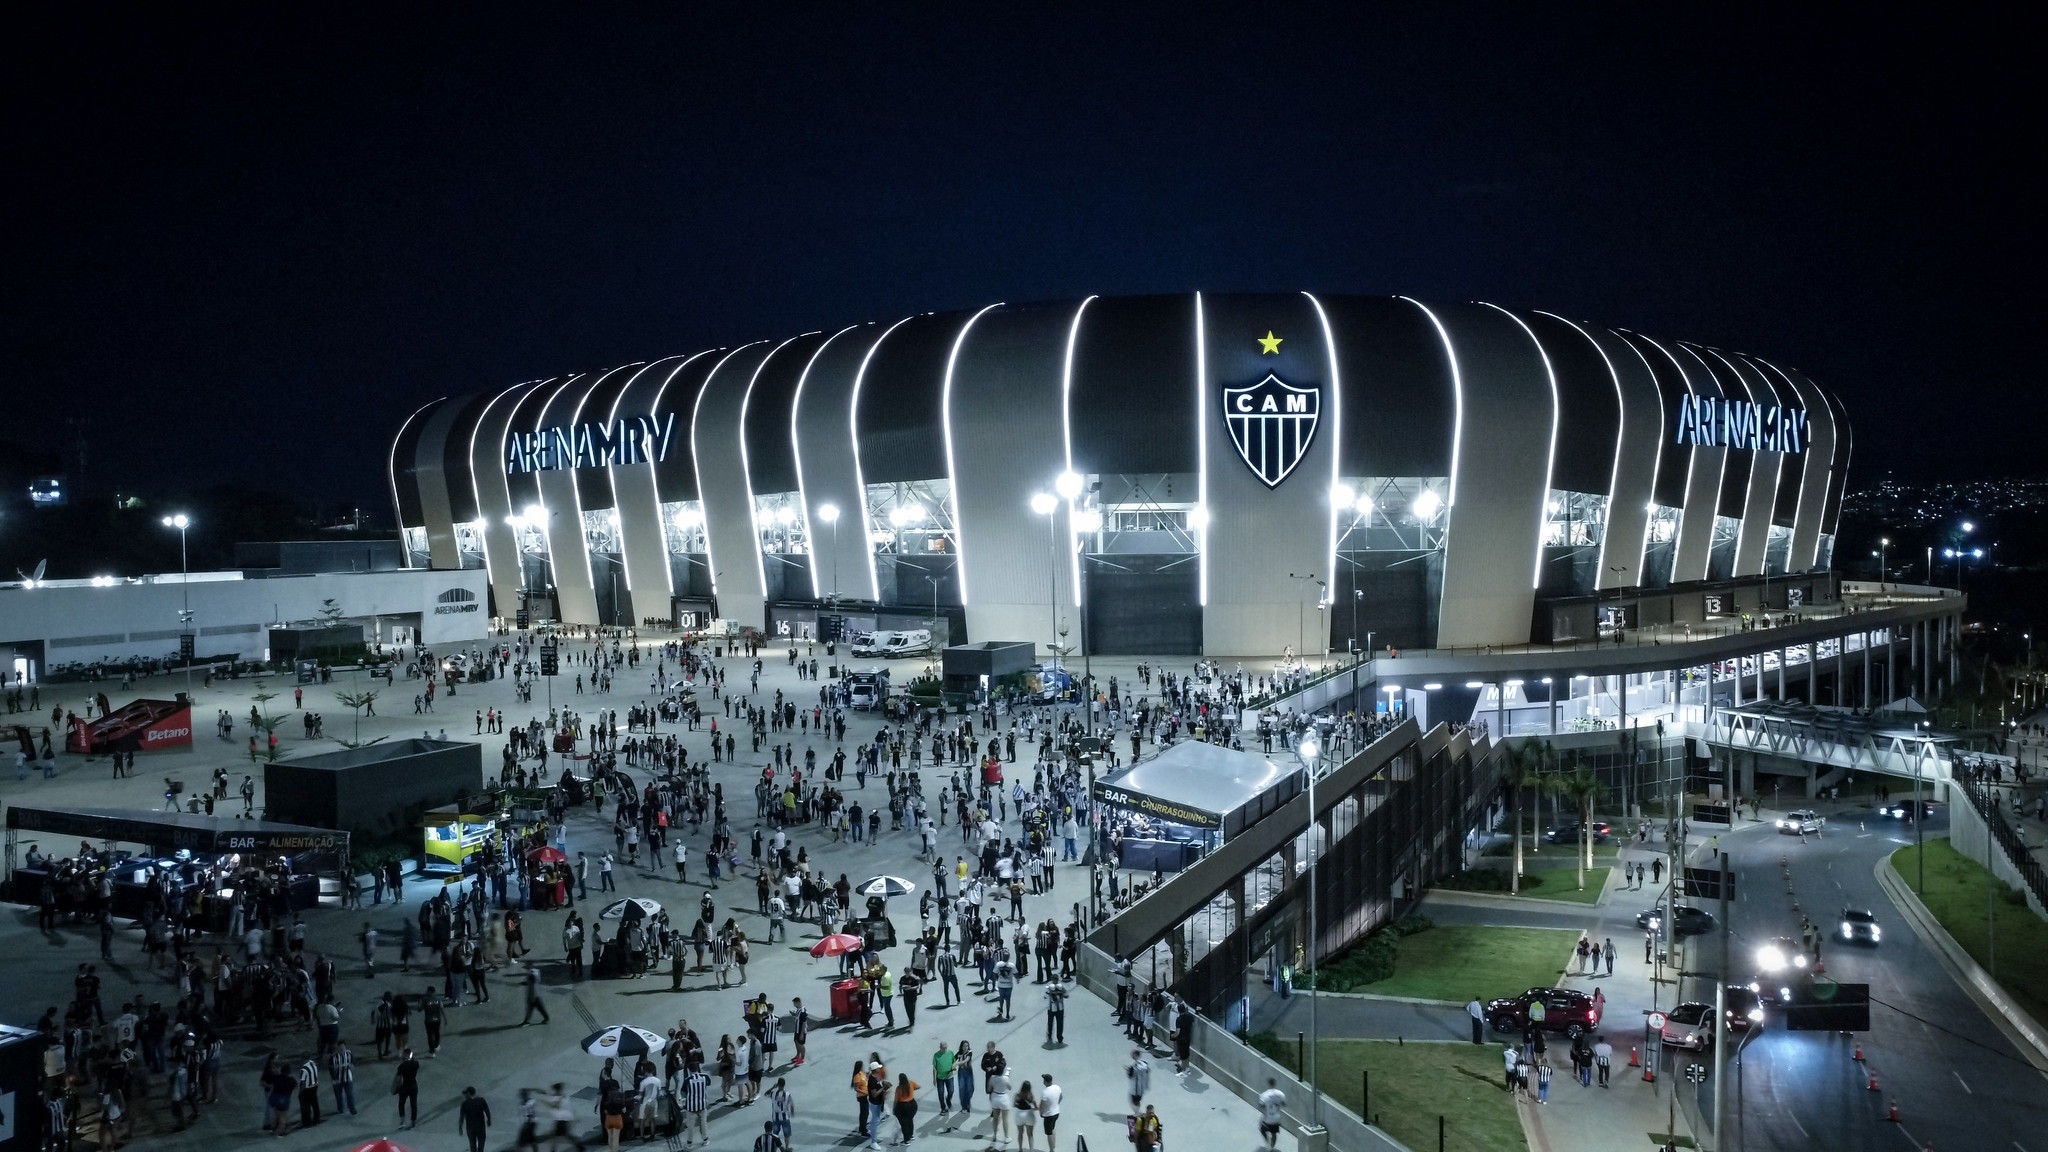 Arena MRV será palco de três duelos do Atlético entre as rodadas 10 a 15 do Campeonato Brasileiro